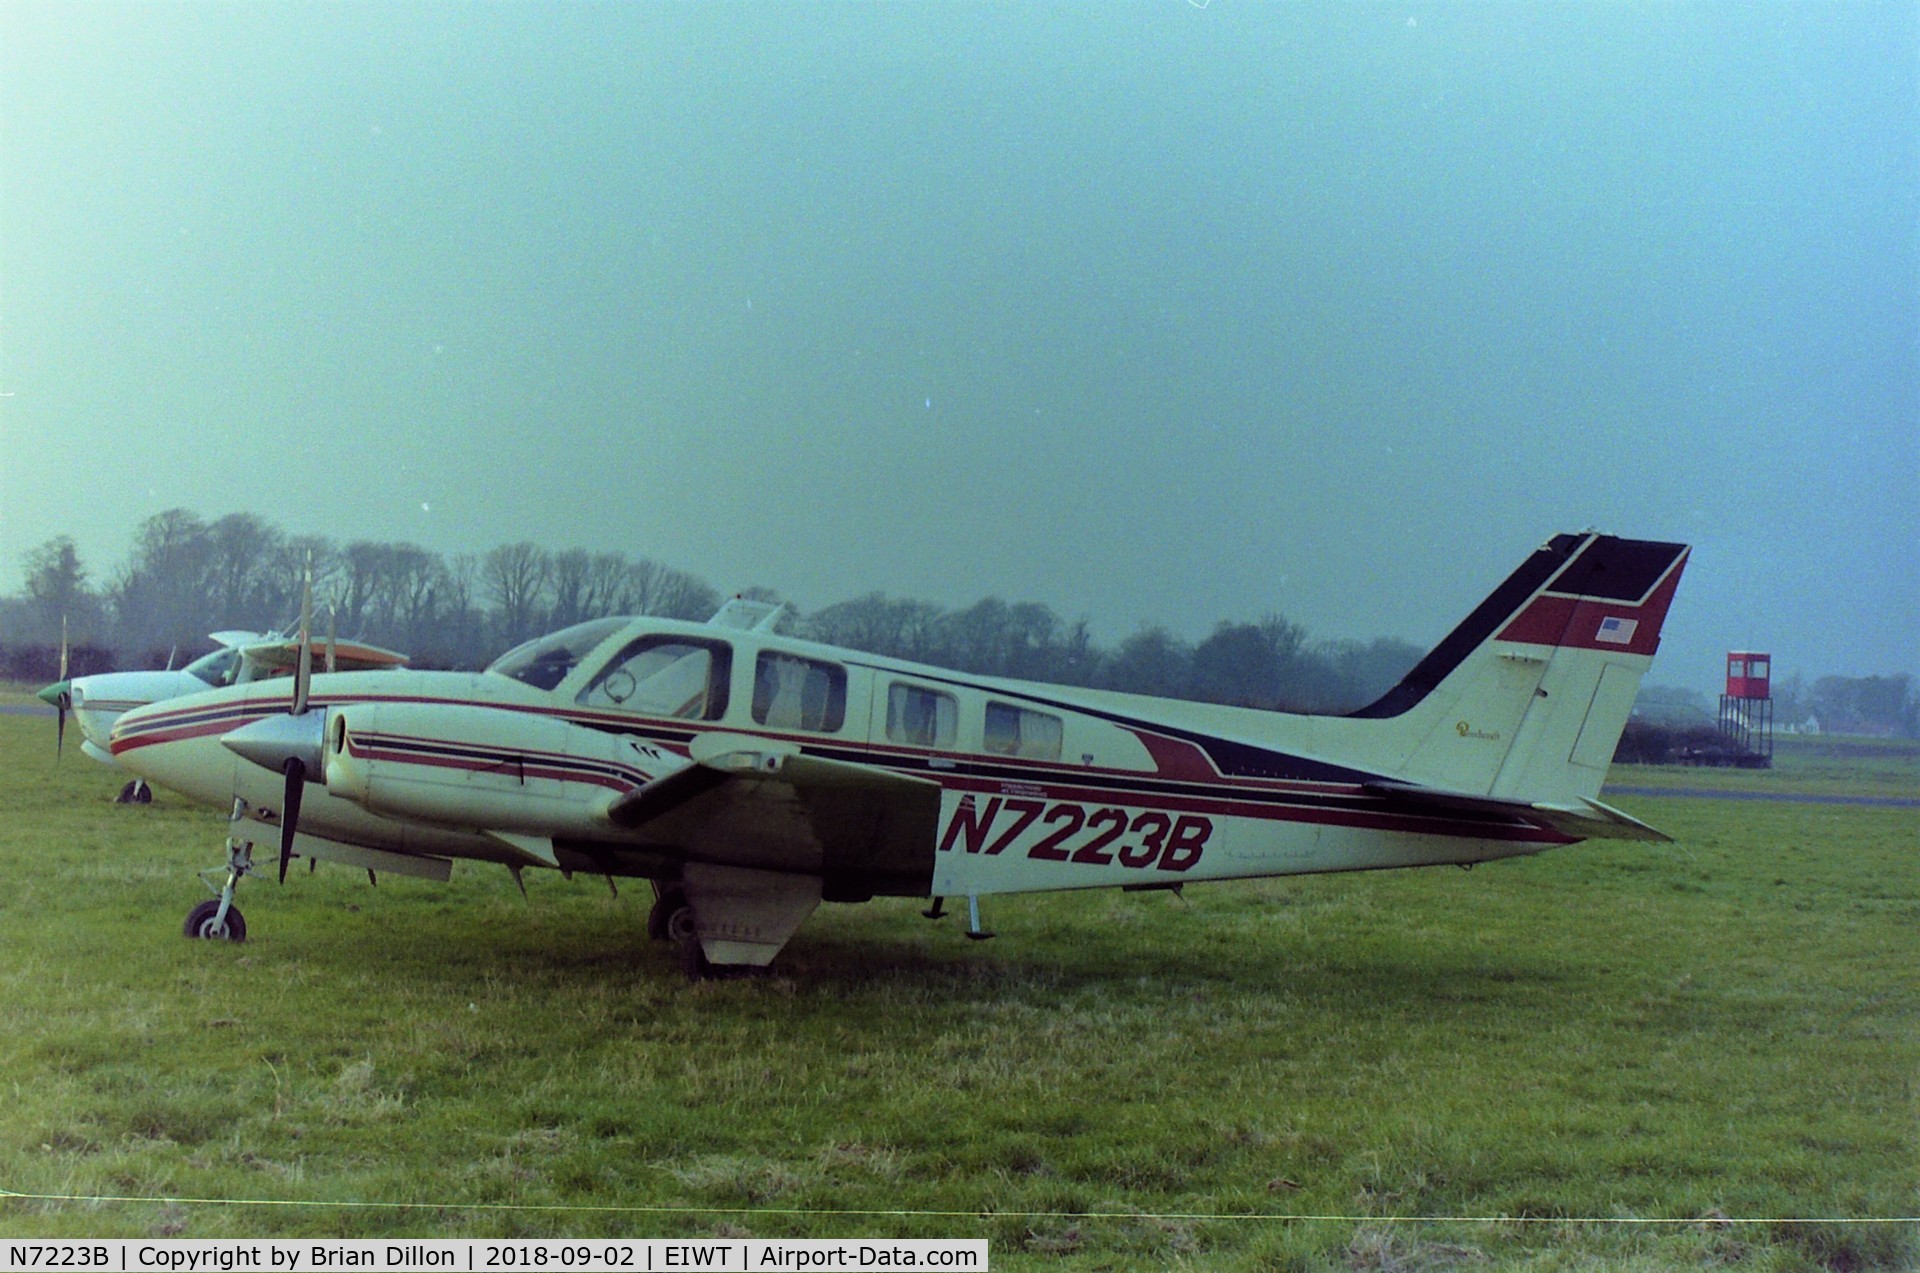 N7223B, 1985 Beech 58 Baron C/N TH-1443, Beech Baron N7223B, Weston, Ireland. 1990s